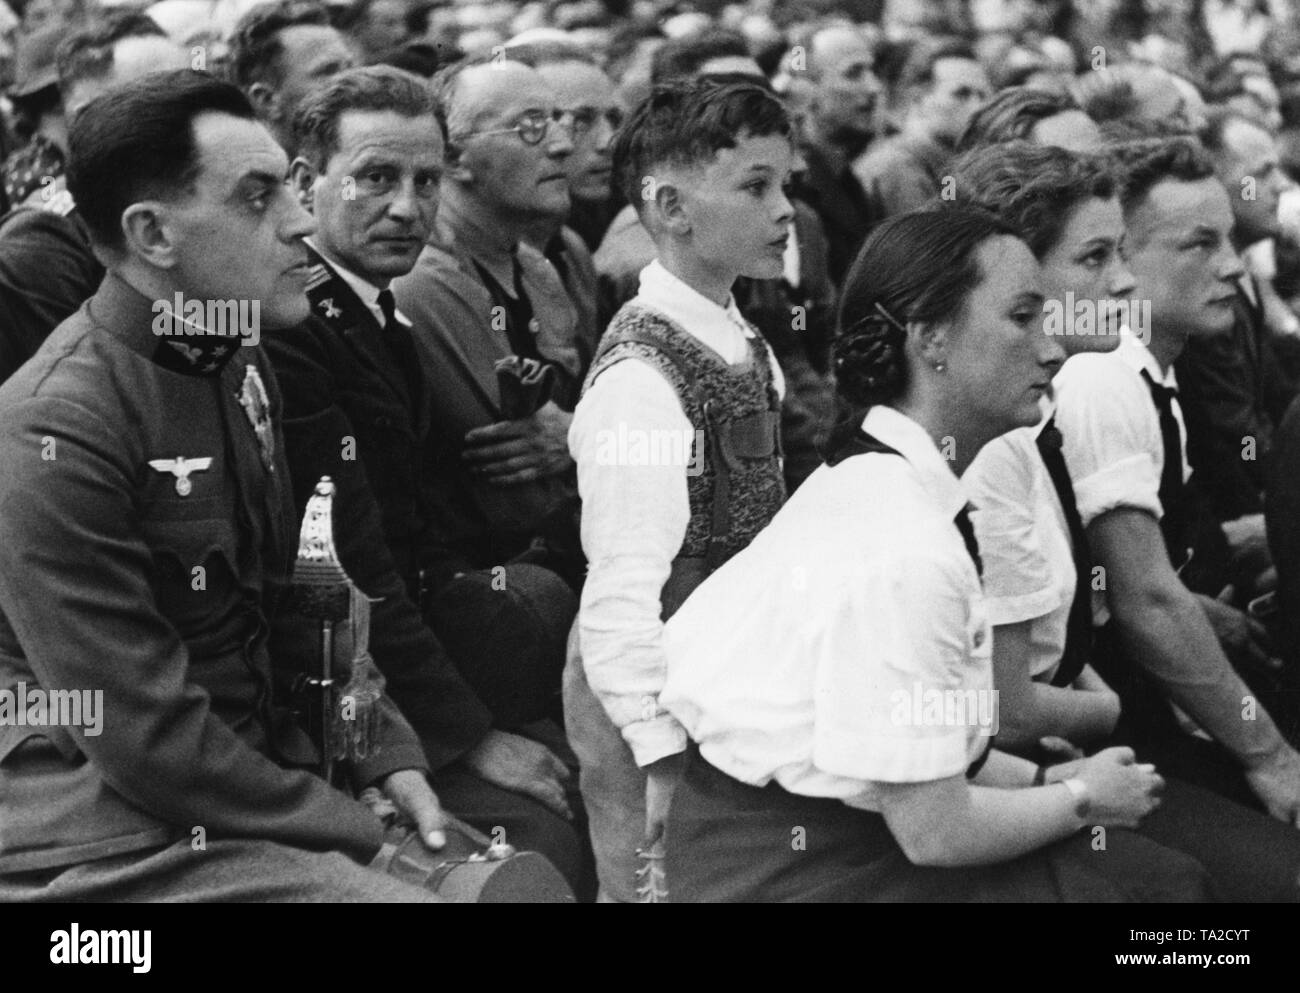 Adolf Hitler eine Rede in der Maschinenhalle Weitzer in Graz. Nach der Annexion Österreichs an das Deutsche Reich, die Nationalsozialistische Diktator besucht österreichischen Städten. Auf der linken Seite, ein Soldat, der bereits den Deutschen Hoheitszeichen trägt, der Adler mit dem Hakenkreuz, auf seine österreichische Uniform. Stockfoto